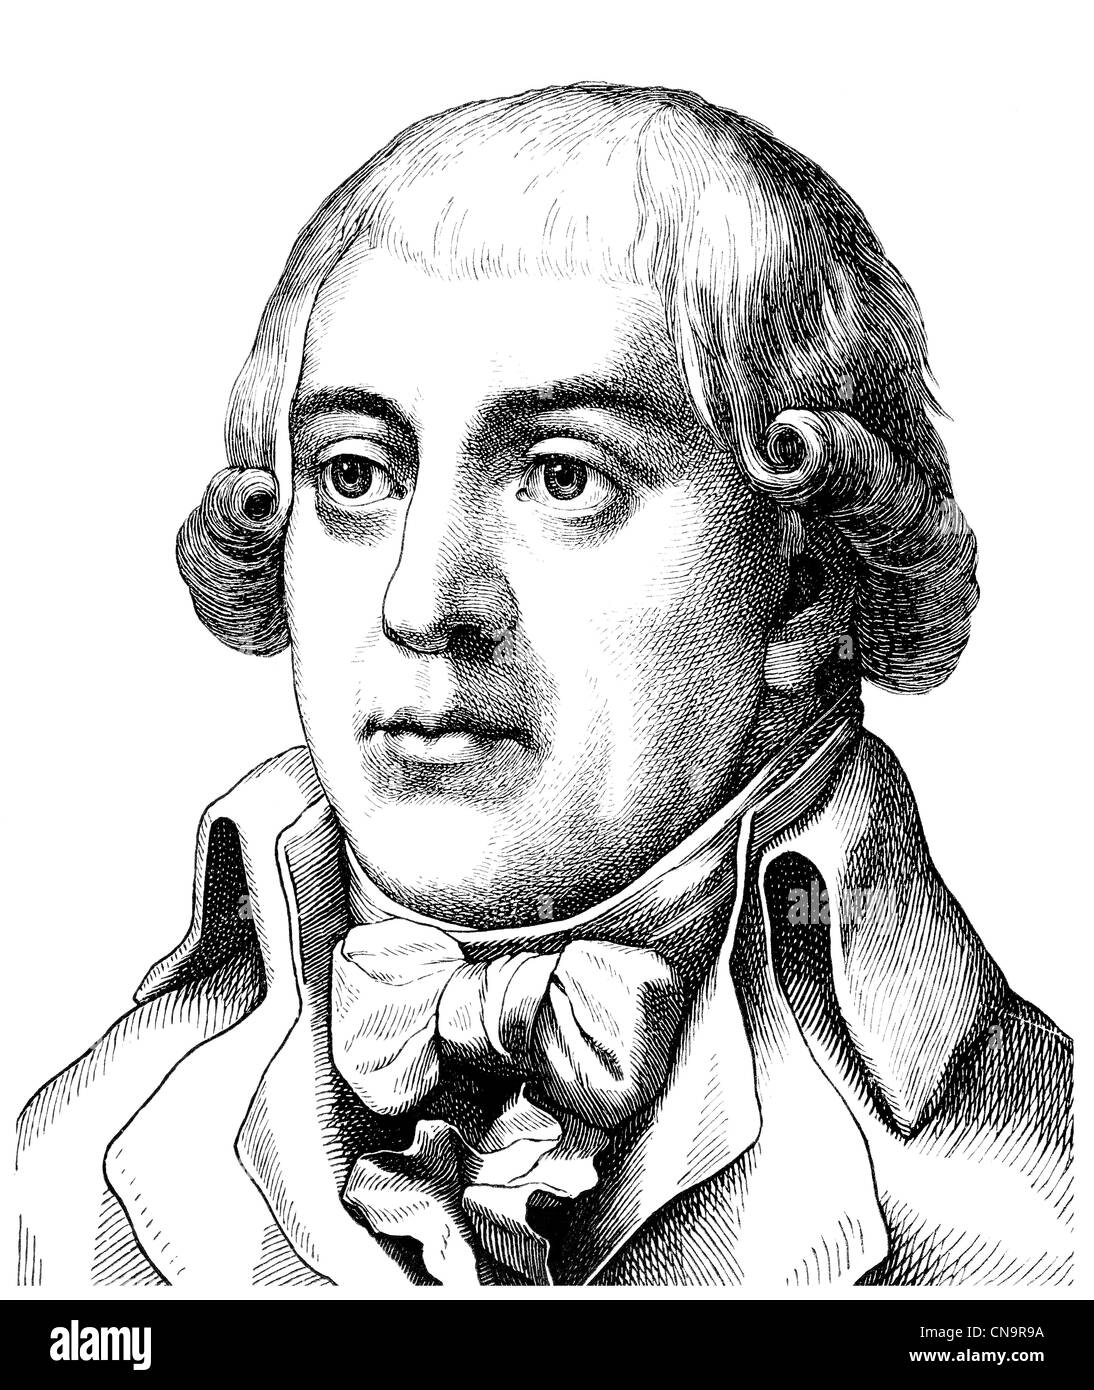 Août, 1747 Gottfried Buerger - 1794, un poète allemand du siècle des Lumières, auteur des aventures du Baron de Münchhausen Banque D'Images